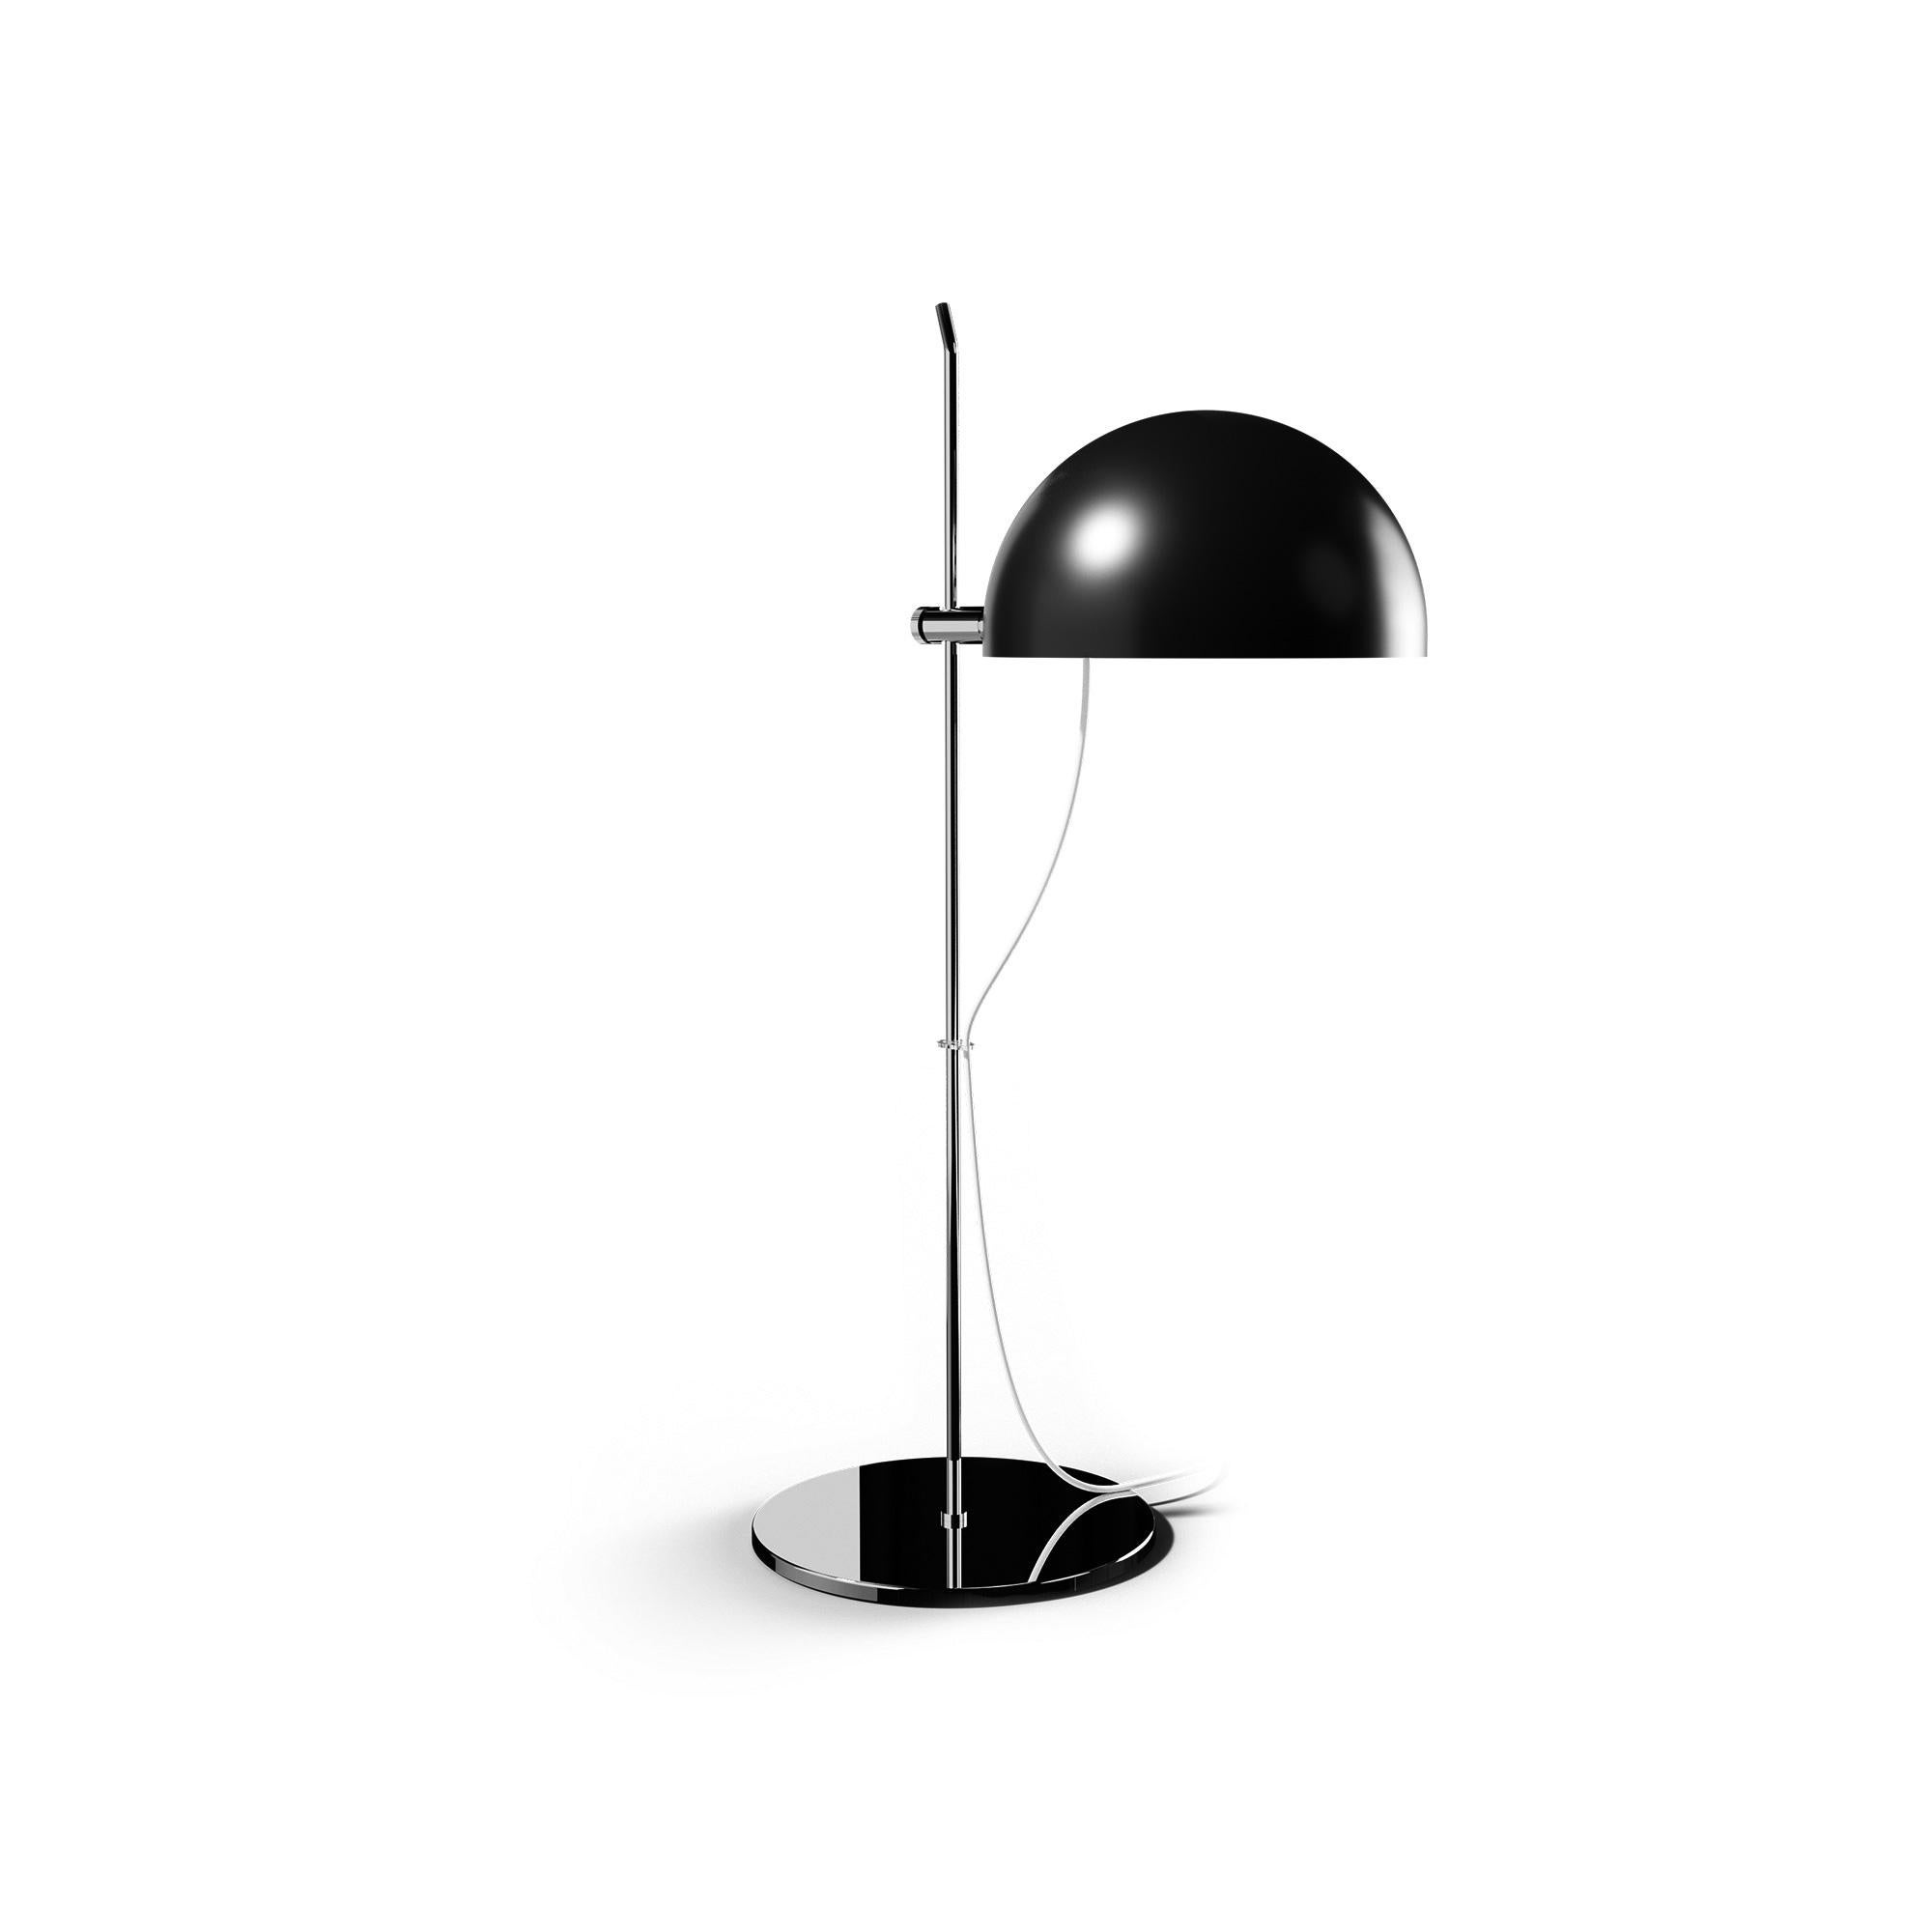 Alain Richard 'A22f' Task Lamp in Black for Disderot For Sale 9